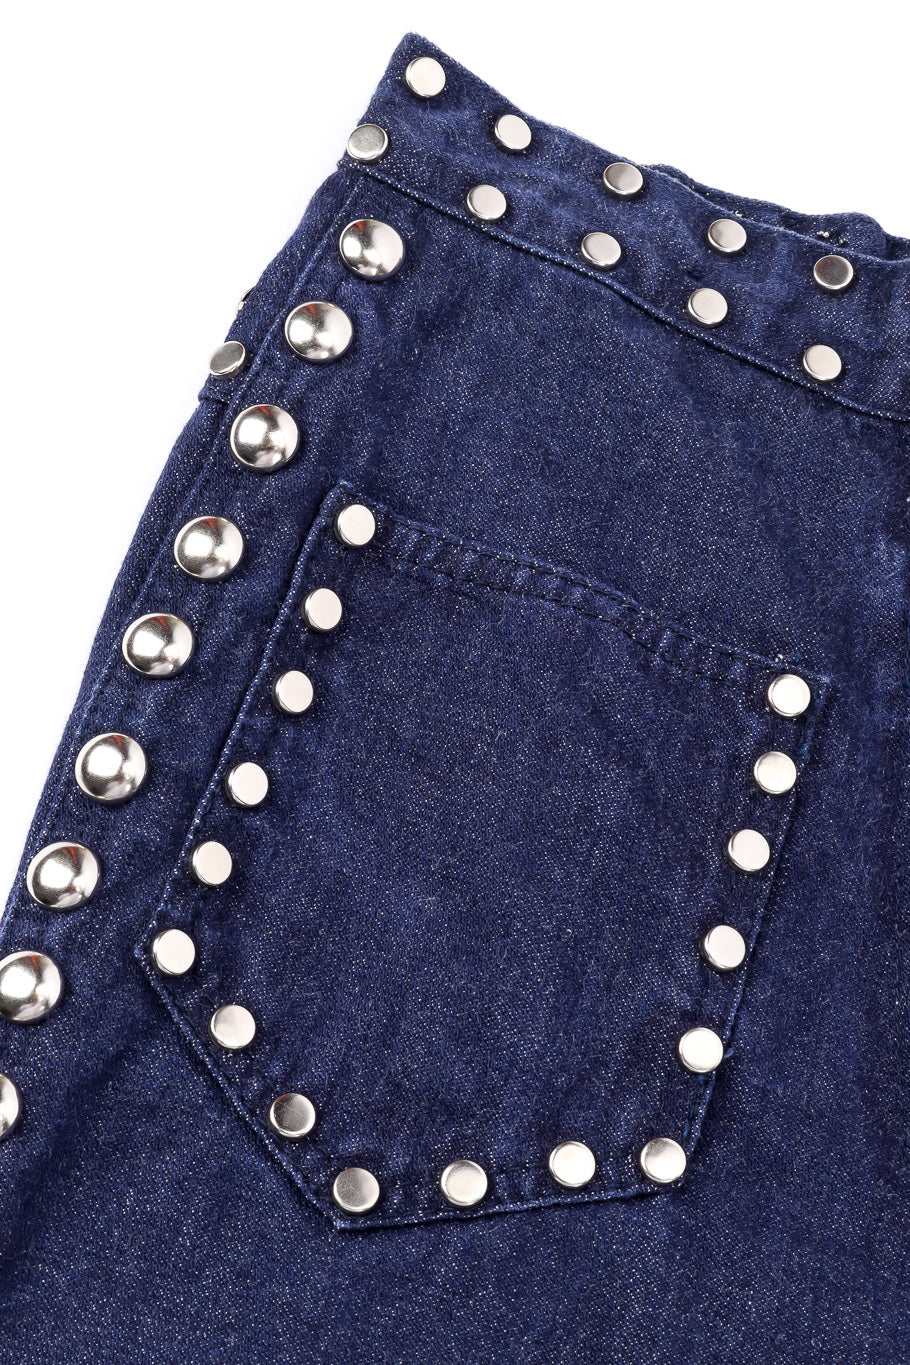 Vintage Allie Flynn Studded Denim Top and Pant Set studs on front patch pocket closeup @Recessla